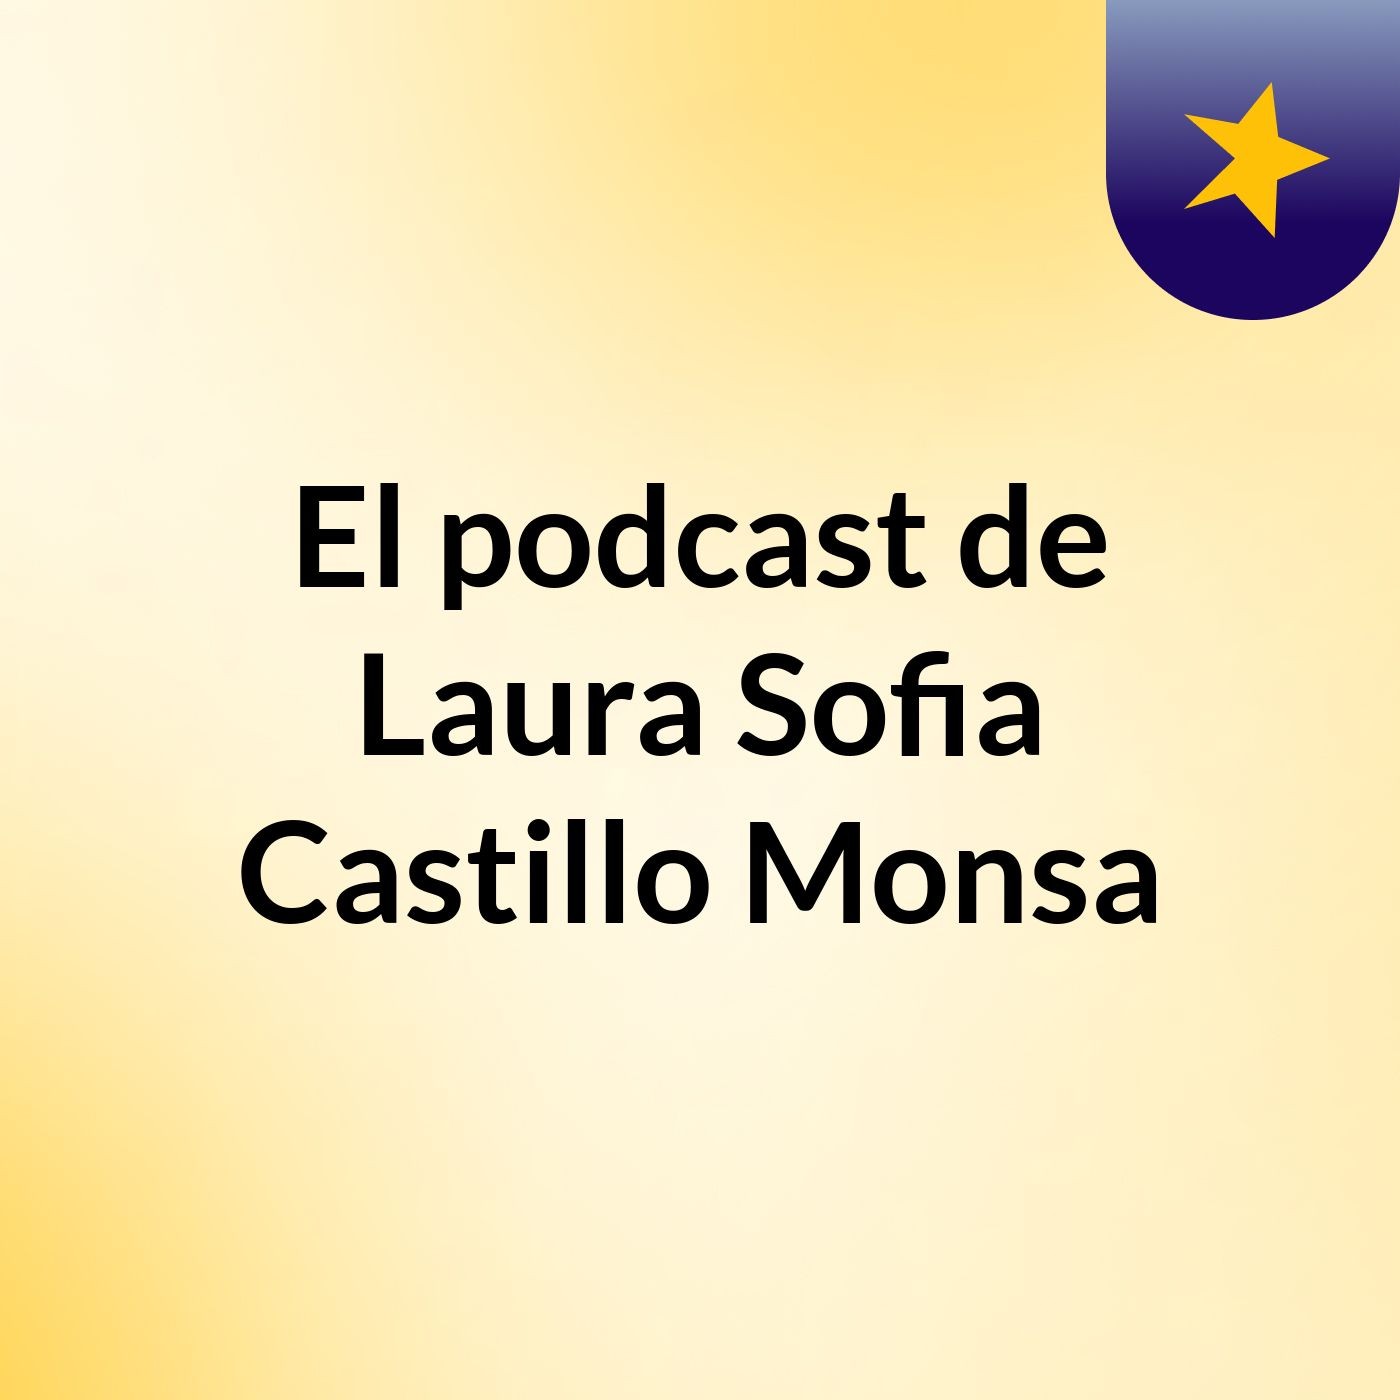 El podcast de Laura Sofia Castillo Monsa